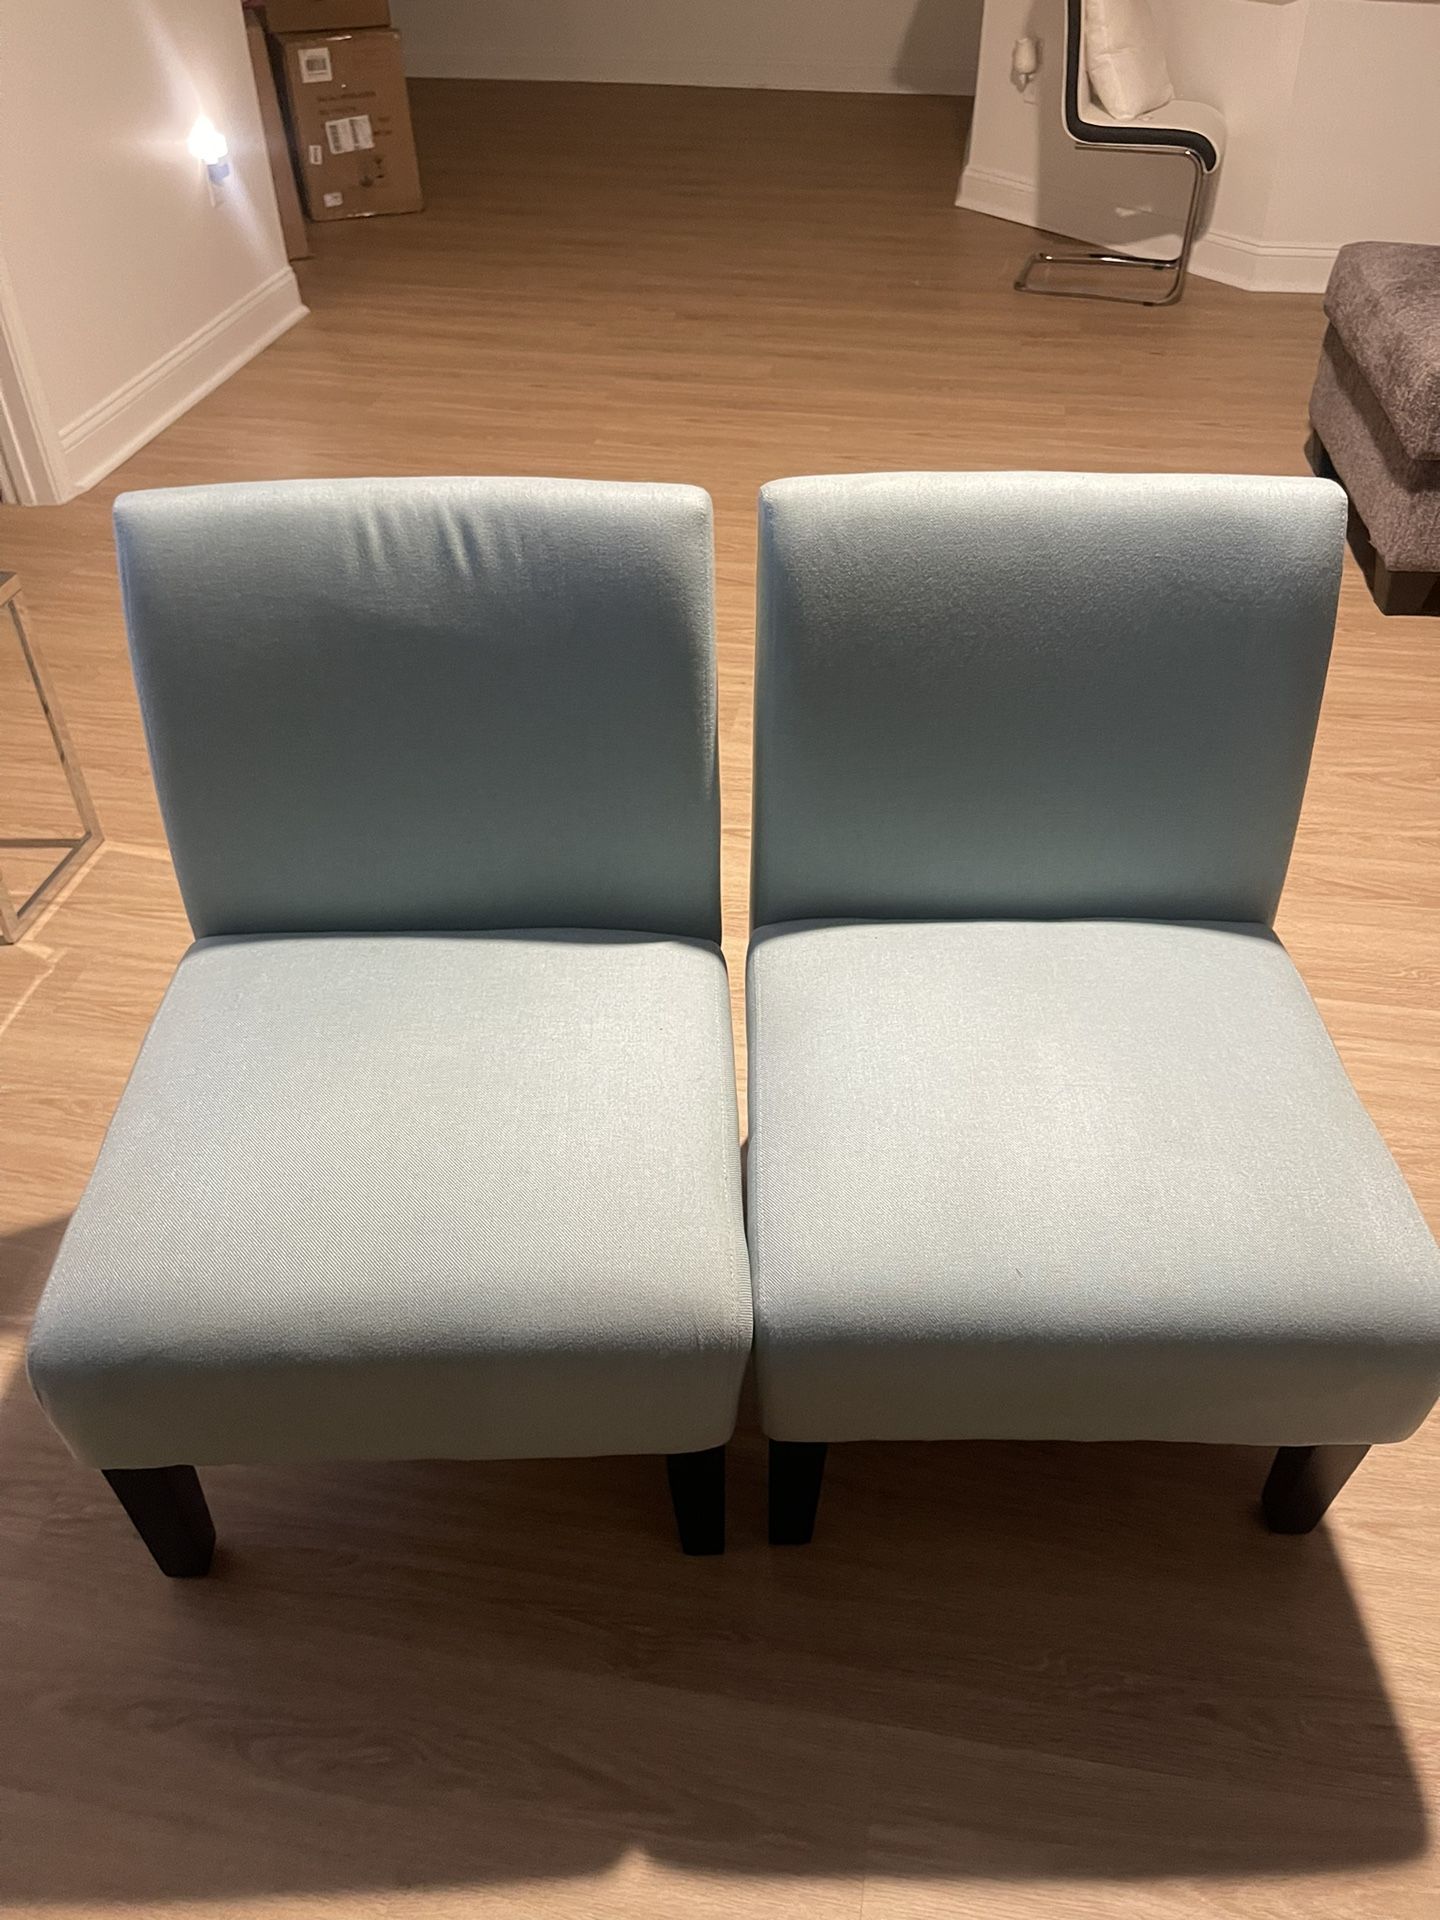 Aqua Blue Chairs